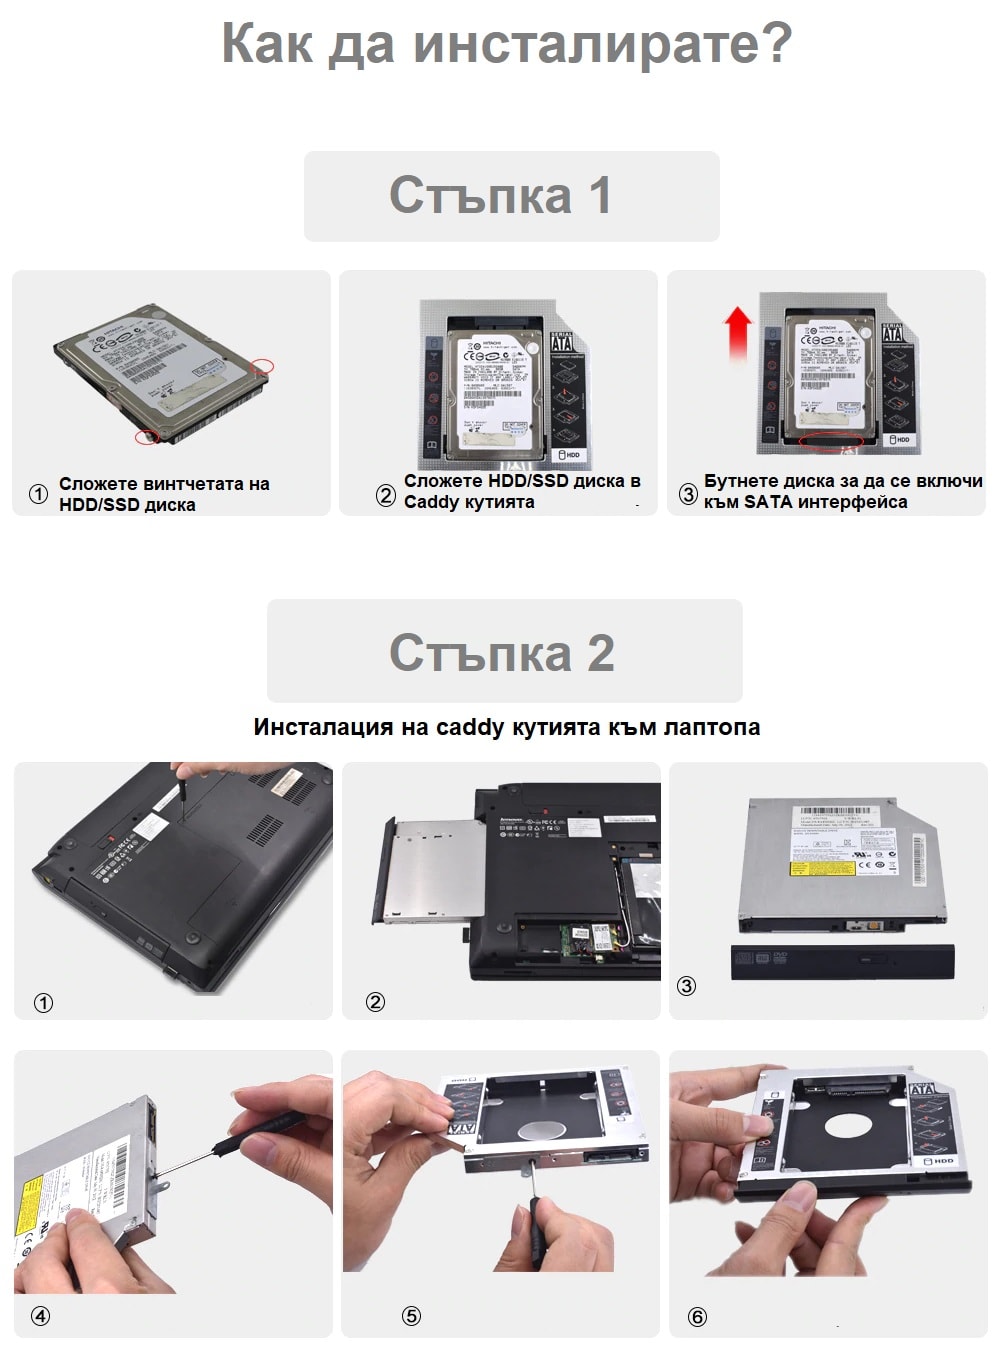 Caddy Кутия 9.5mm 12.7mm за Втори Хард Диск HDD /SSD – 9.5мм - Universal-2nd-HDD-Caddy-9-5mm-12-7mm-SATA-3-box_1